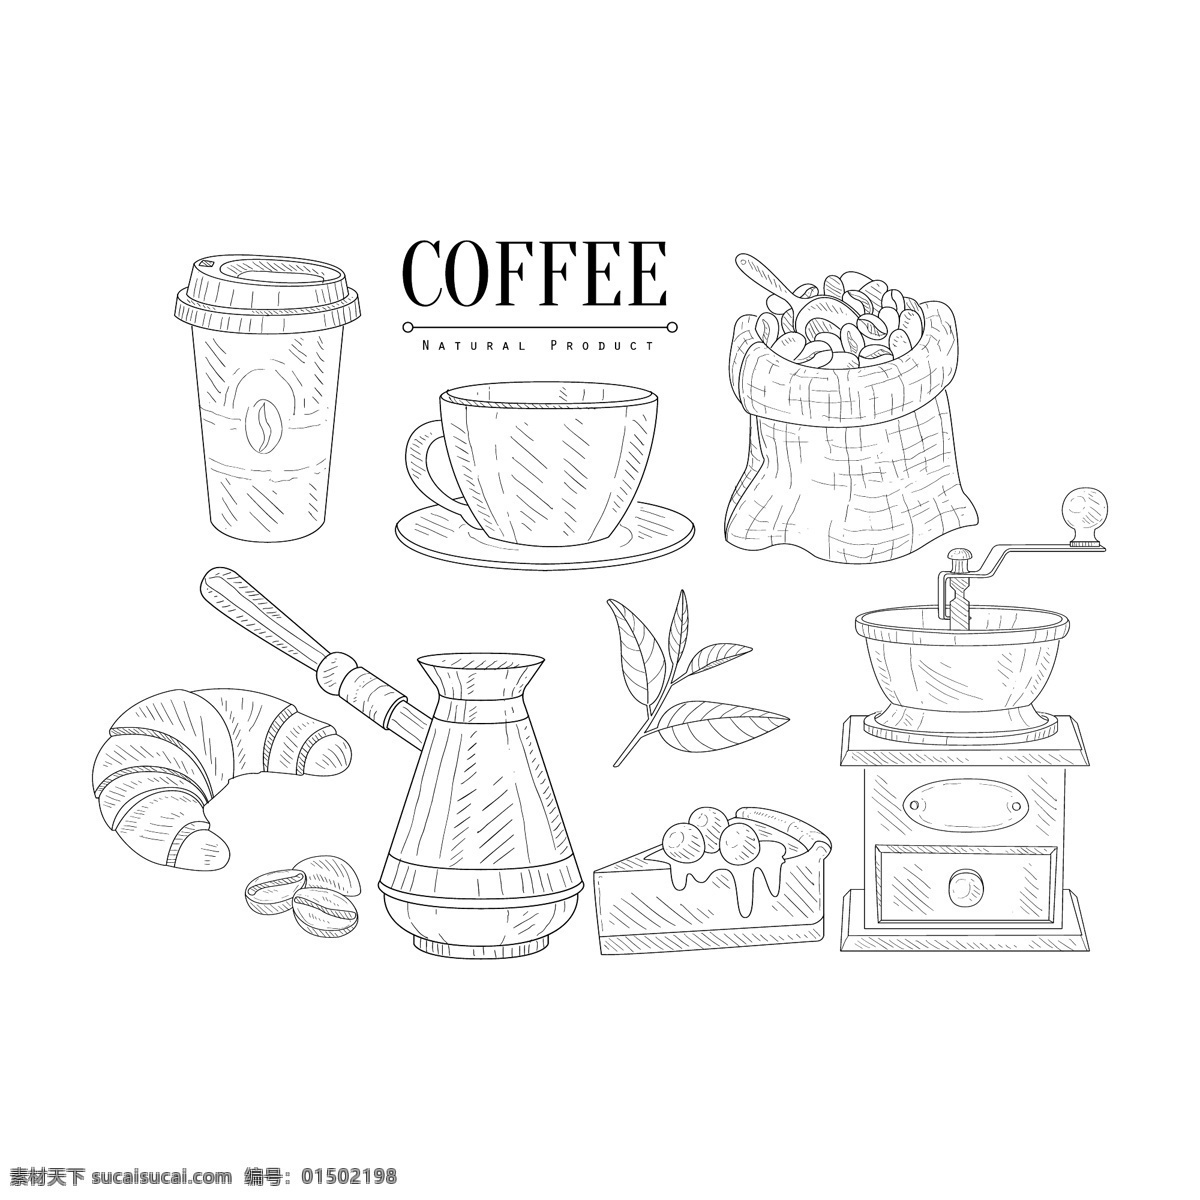 黑白 线条 手绘 咖啡 用品 静物 杯子 咖啡杯 咖啡豆 面包 咖啡机